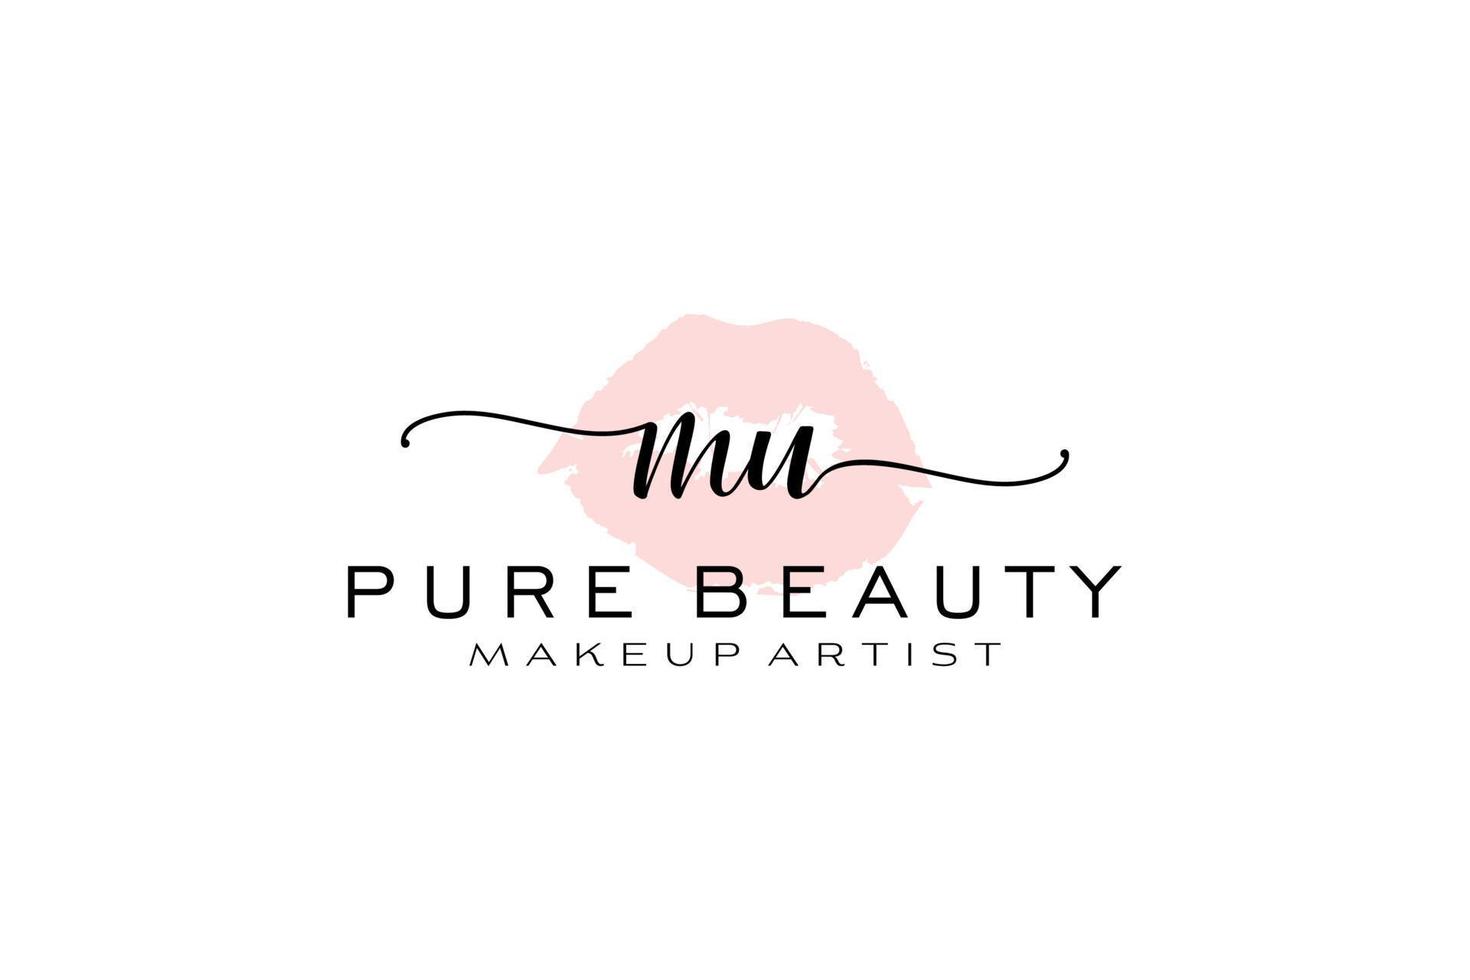 création initiale de logo préfabriqué pour les lèvres aquarelle mu, logo pour la marque d'entreprise de maquilleur, création de logo de boutique de beauté blush, logo de calligraphie avec modèle créatif. vecteur